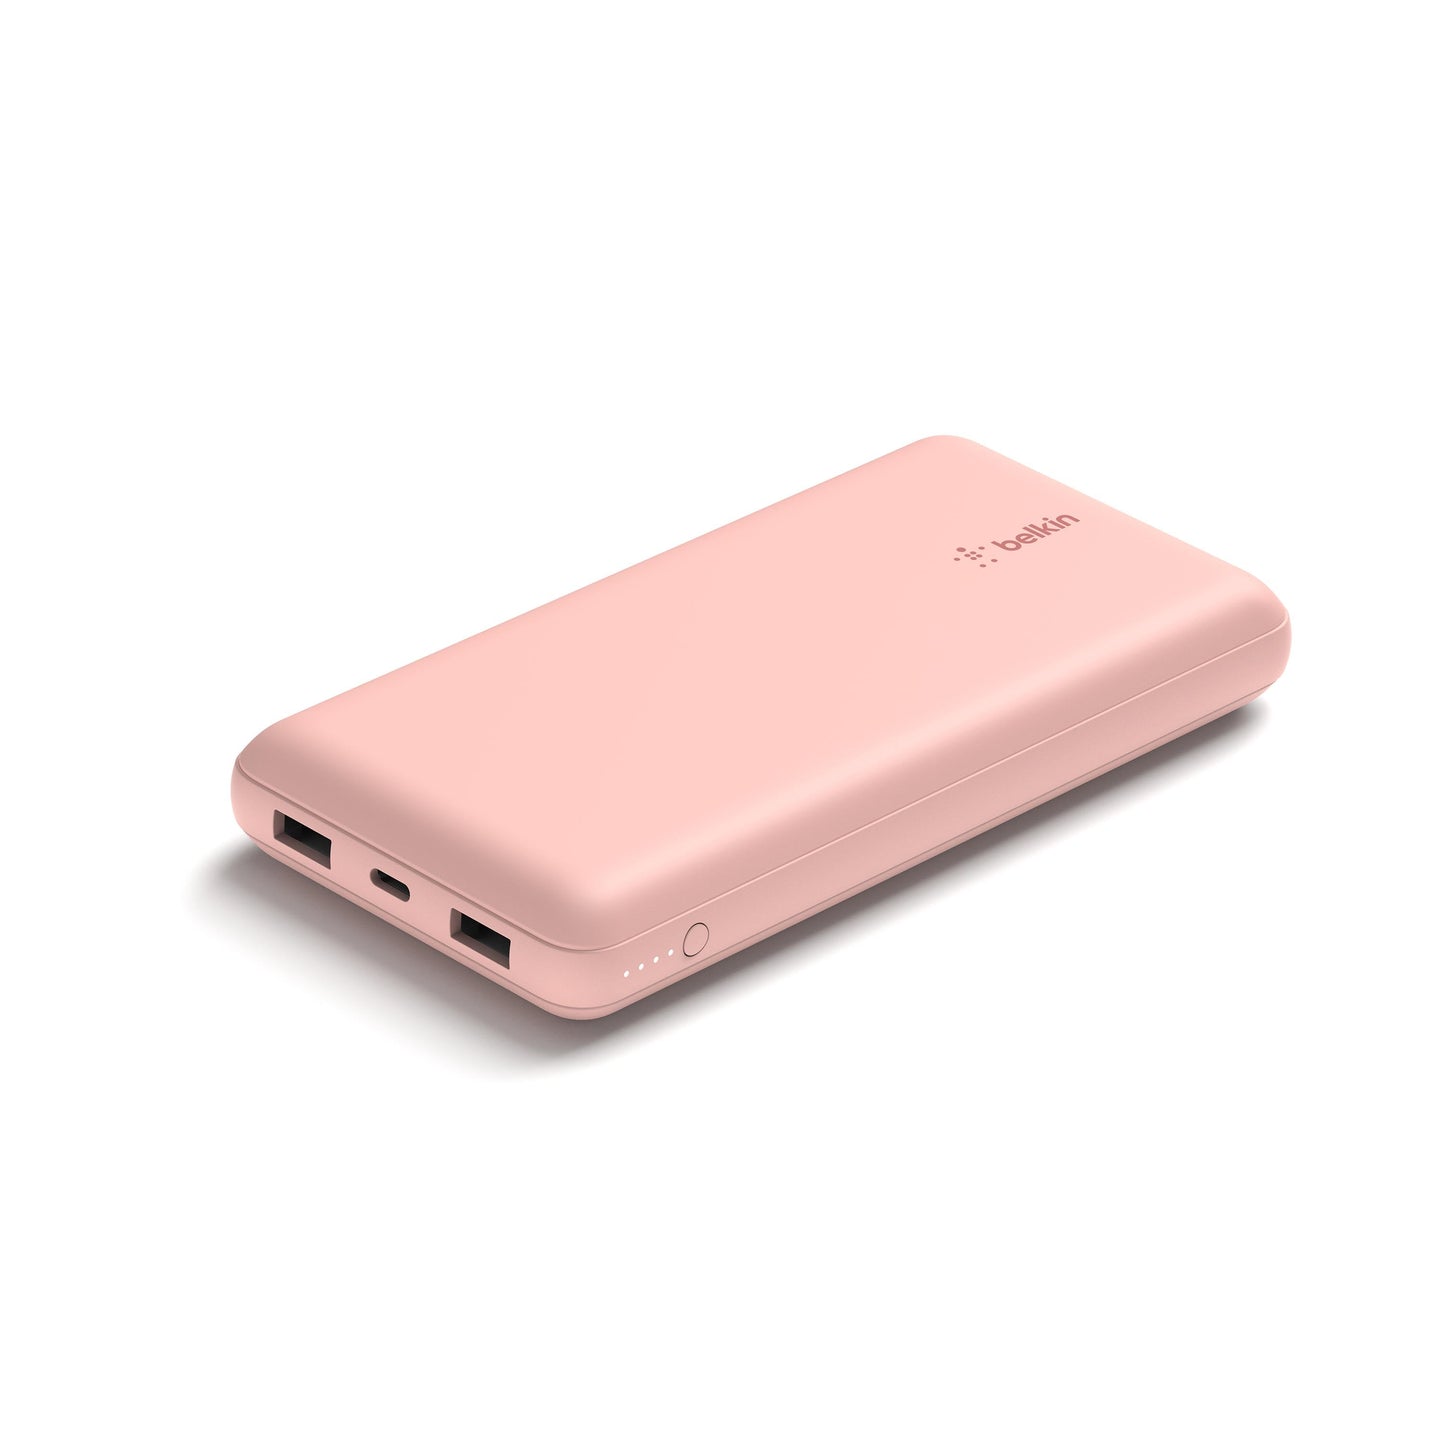 Batería externa 20K USB-A y USB-C de 15w de Belkin Oro rosa - Rossellimac